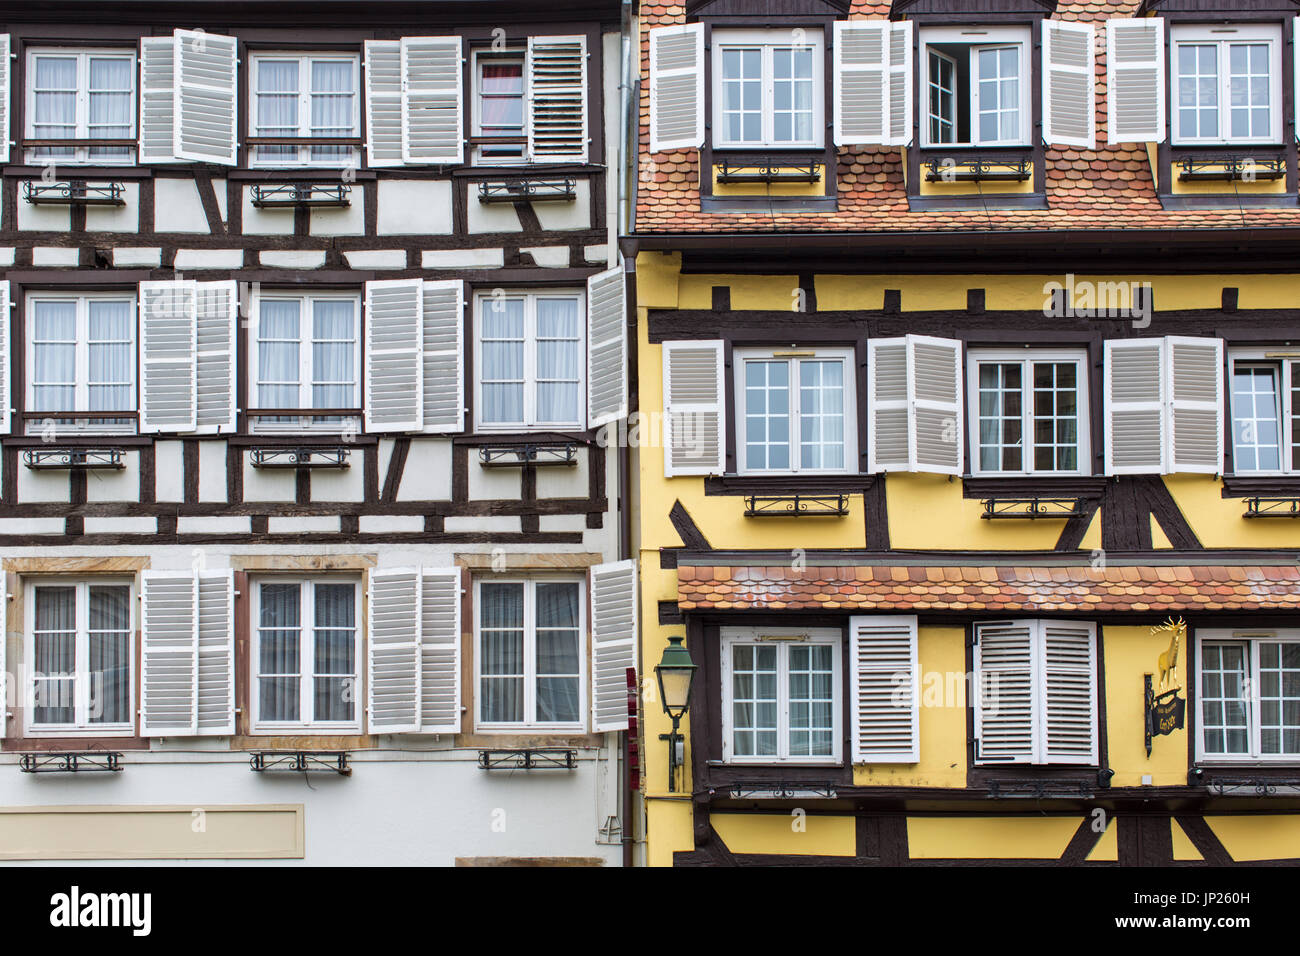 Strasbourg, Alsace, France - 3 mai 2014 : les bâtiments à colombages typique de l'Alsace à Strasbourg. Strasbourg est la capitale de la région Grand Est (anciennement Alsace) de France et le siège officiel de l'Union européenne. Banque D'Images